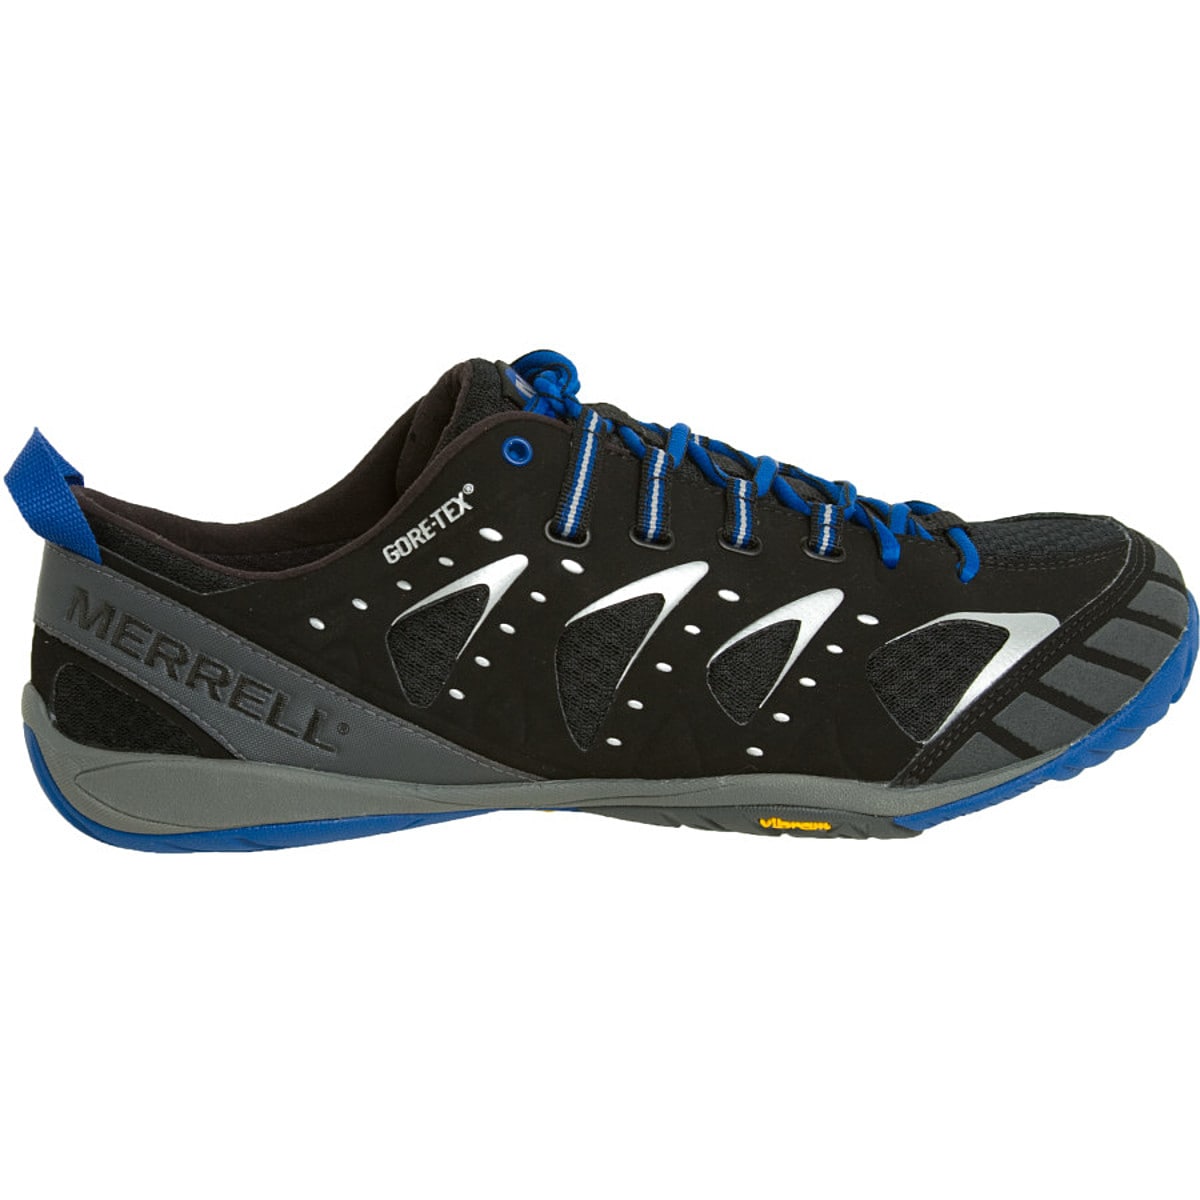 Embark Glove GTX Trail Running Shoes Men's - Footwear